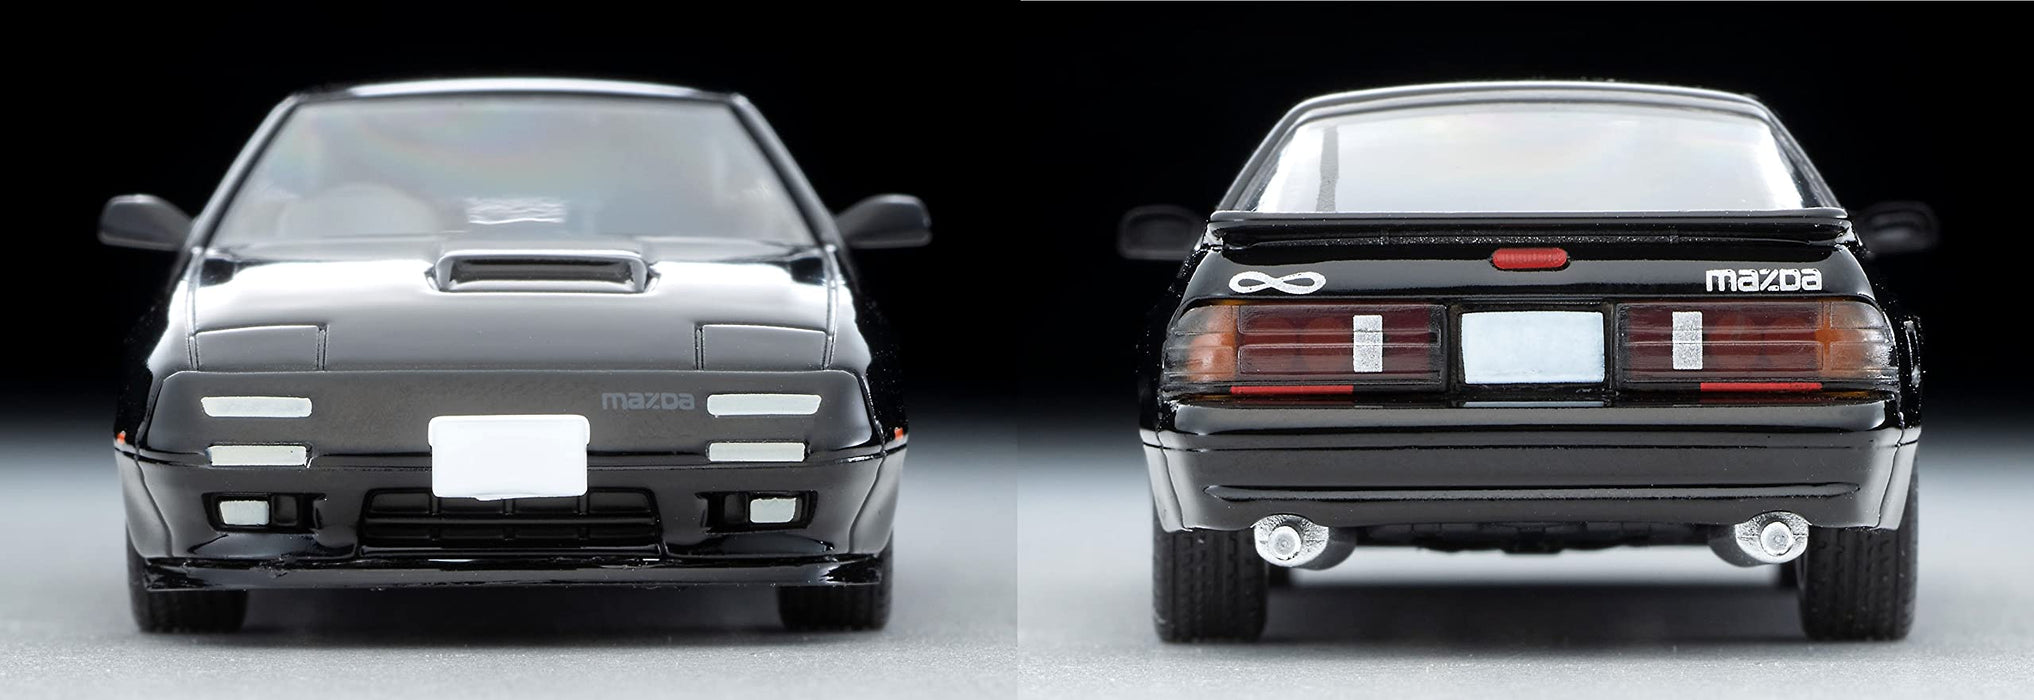 Tomytec Tomica Vintage Neo Mazda Savanna Rx-7 1/64 Scale - Lv-N192E Infini Black